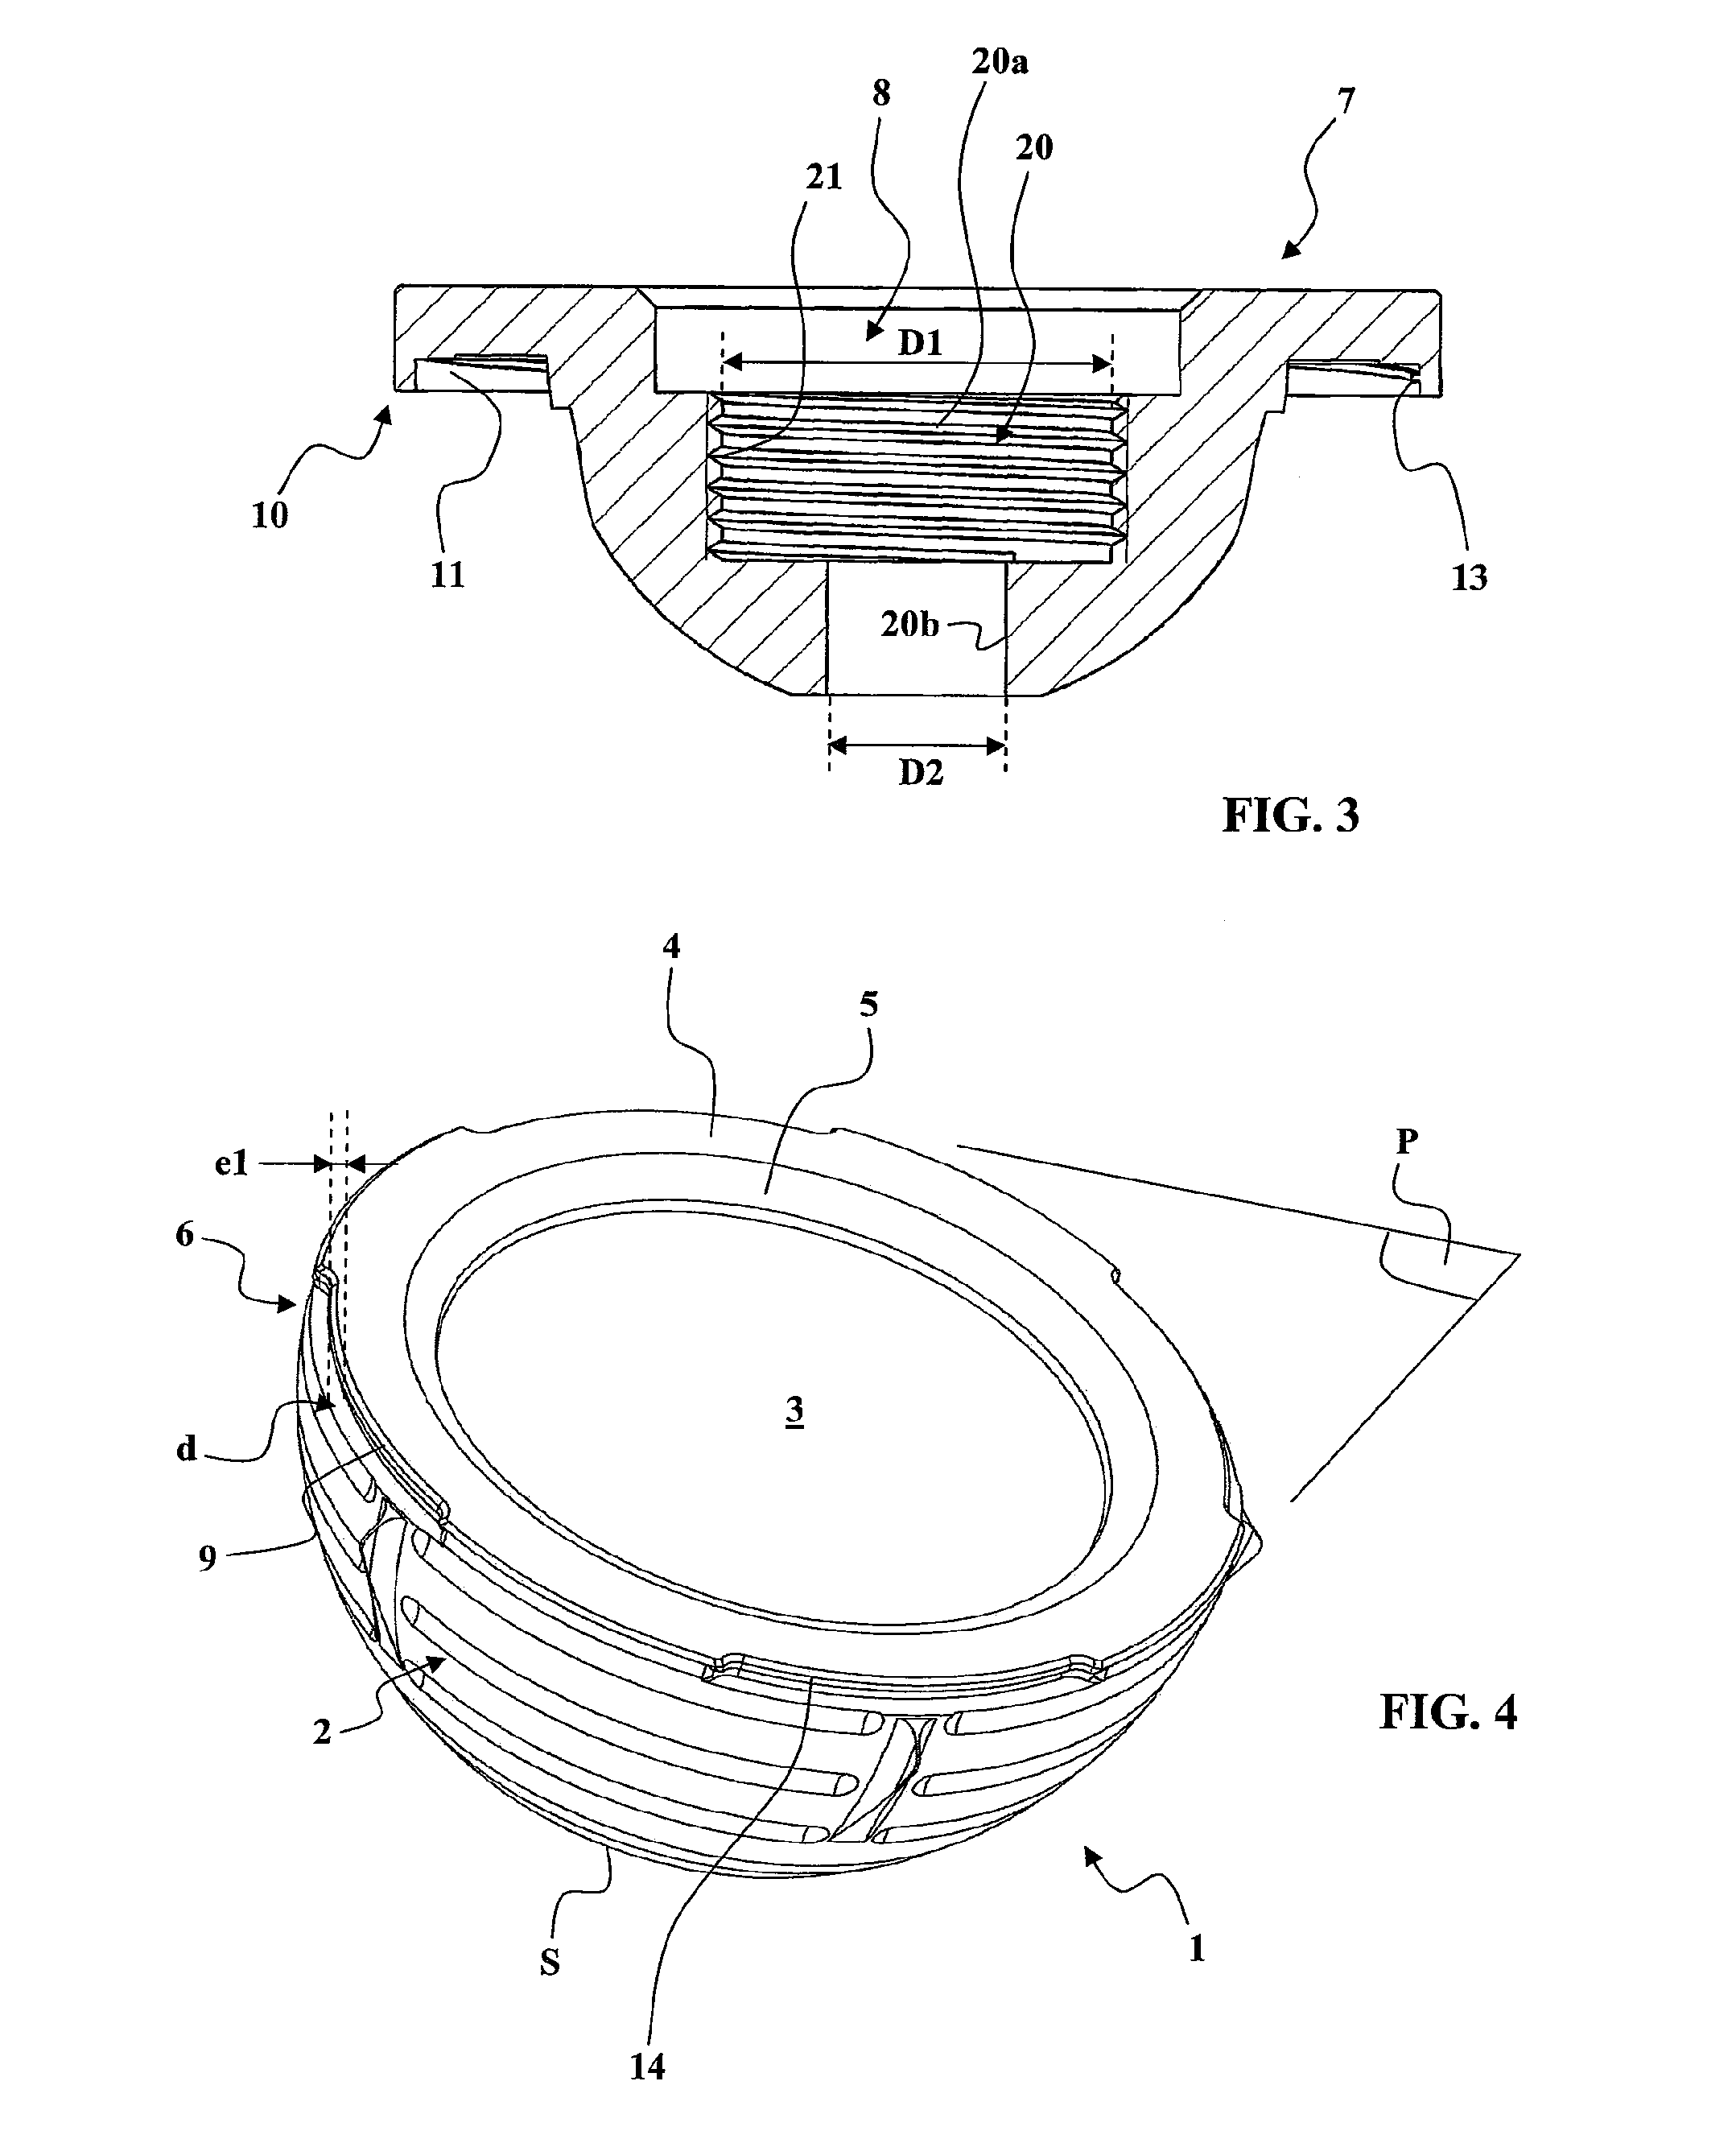 Method for producing a ceramic acetabulum